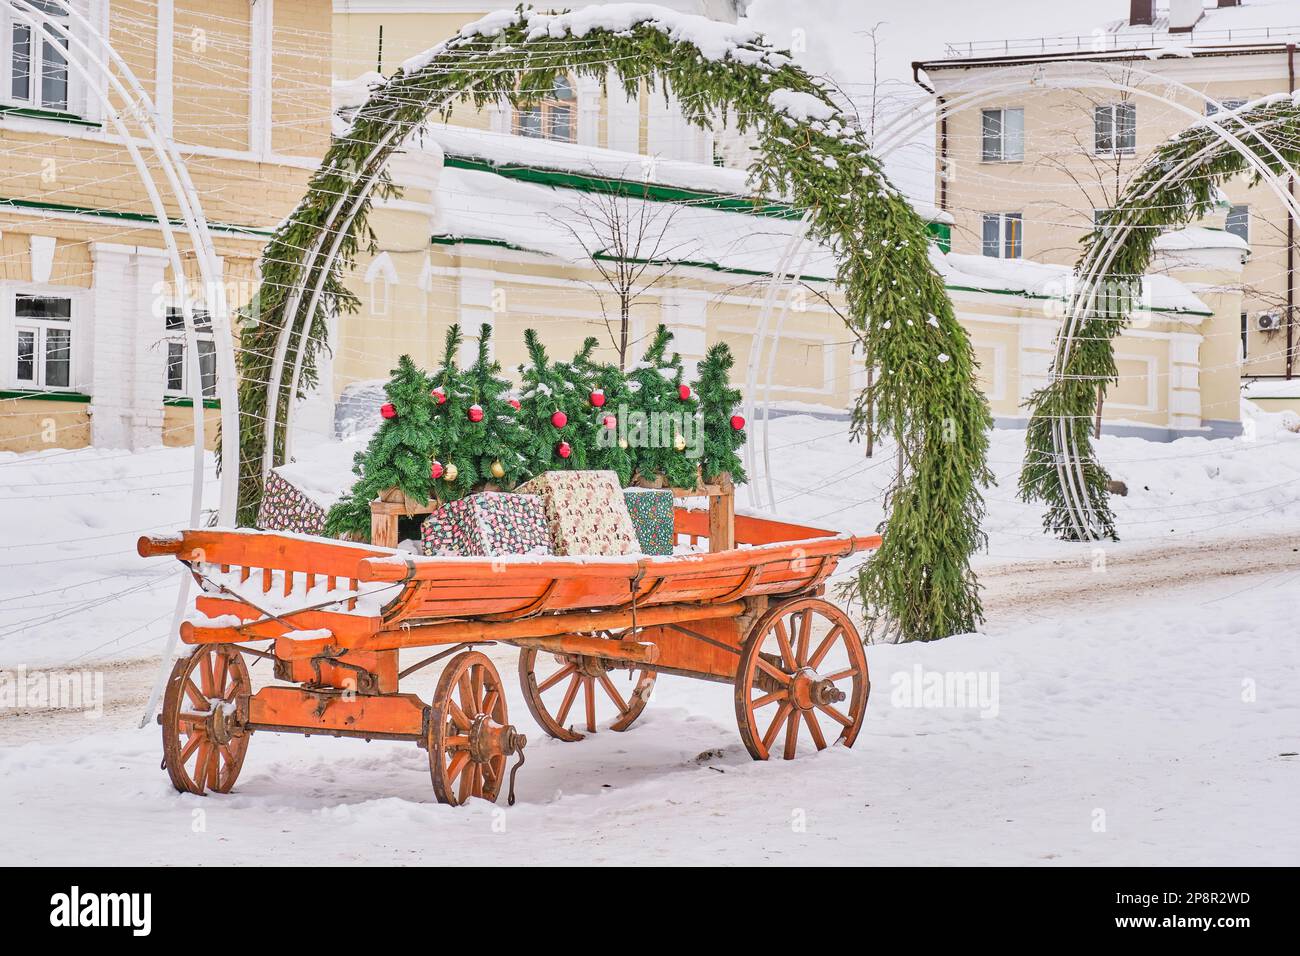 Décoration extérieure pour les vacances d'hiver. Sur un vieux chariot en bois peint brillant arbres de Noël avec des boules de Noël, boîtes avec des cadeaux. Arc de bois d'épicéa Banque D'Images